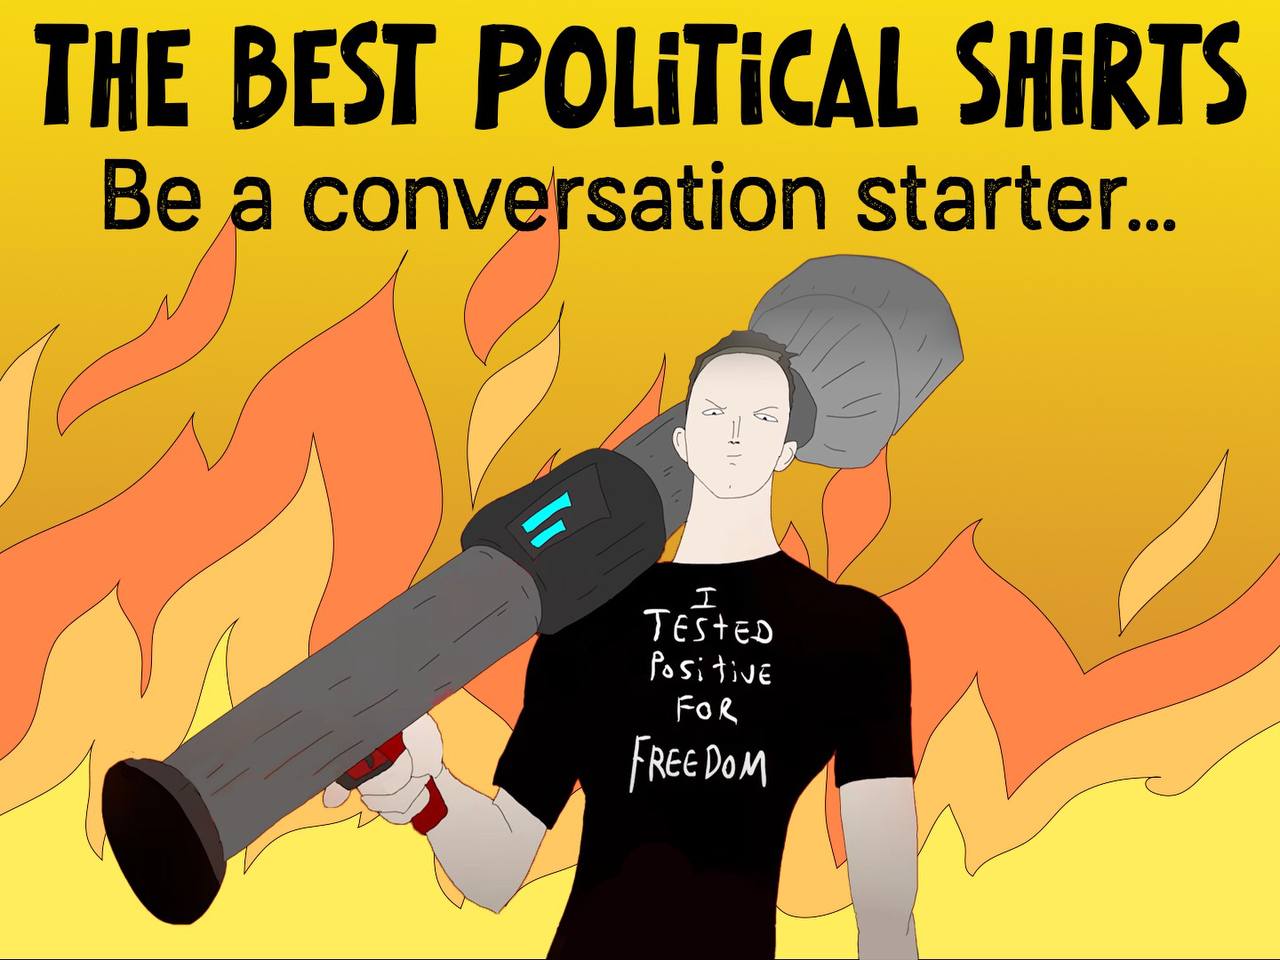 TheBestPoliticalShirts.com